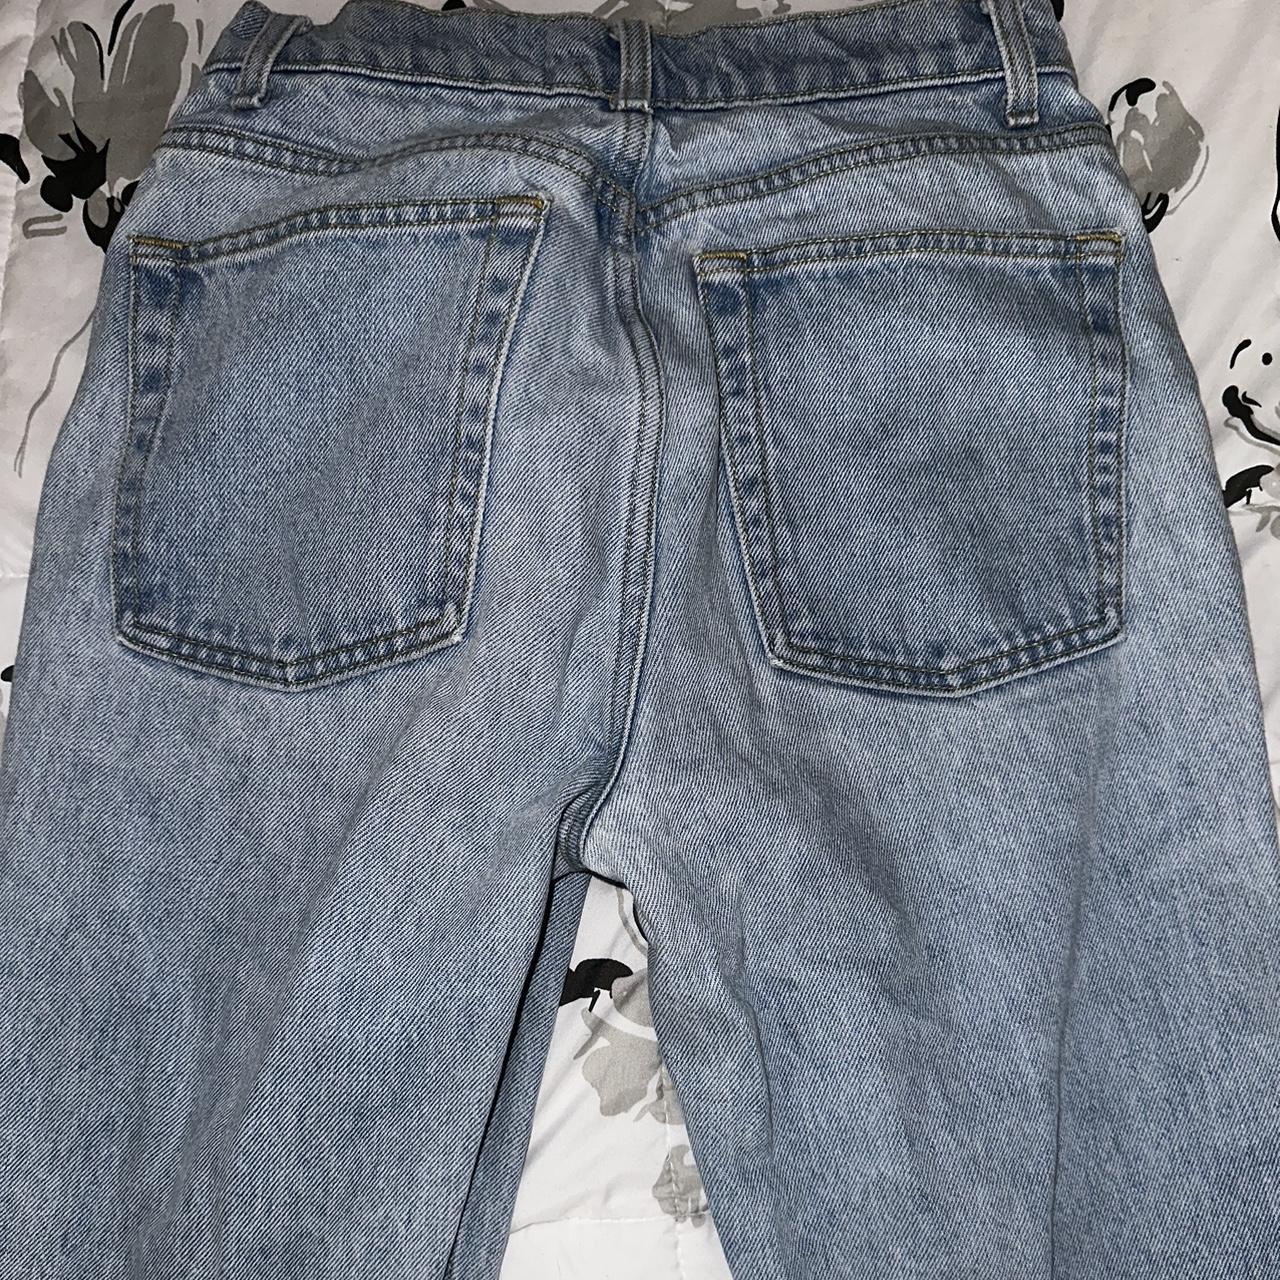 American Apparel Women's Jeans (8)